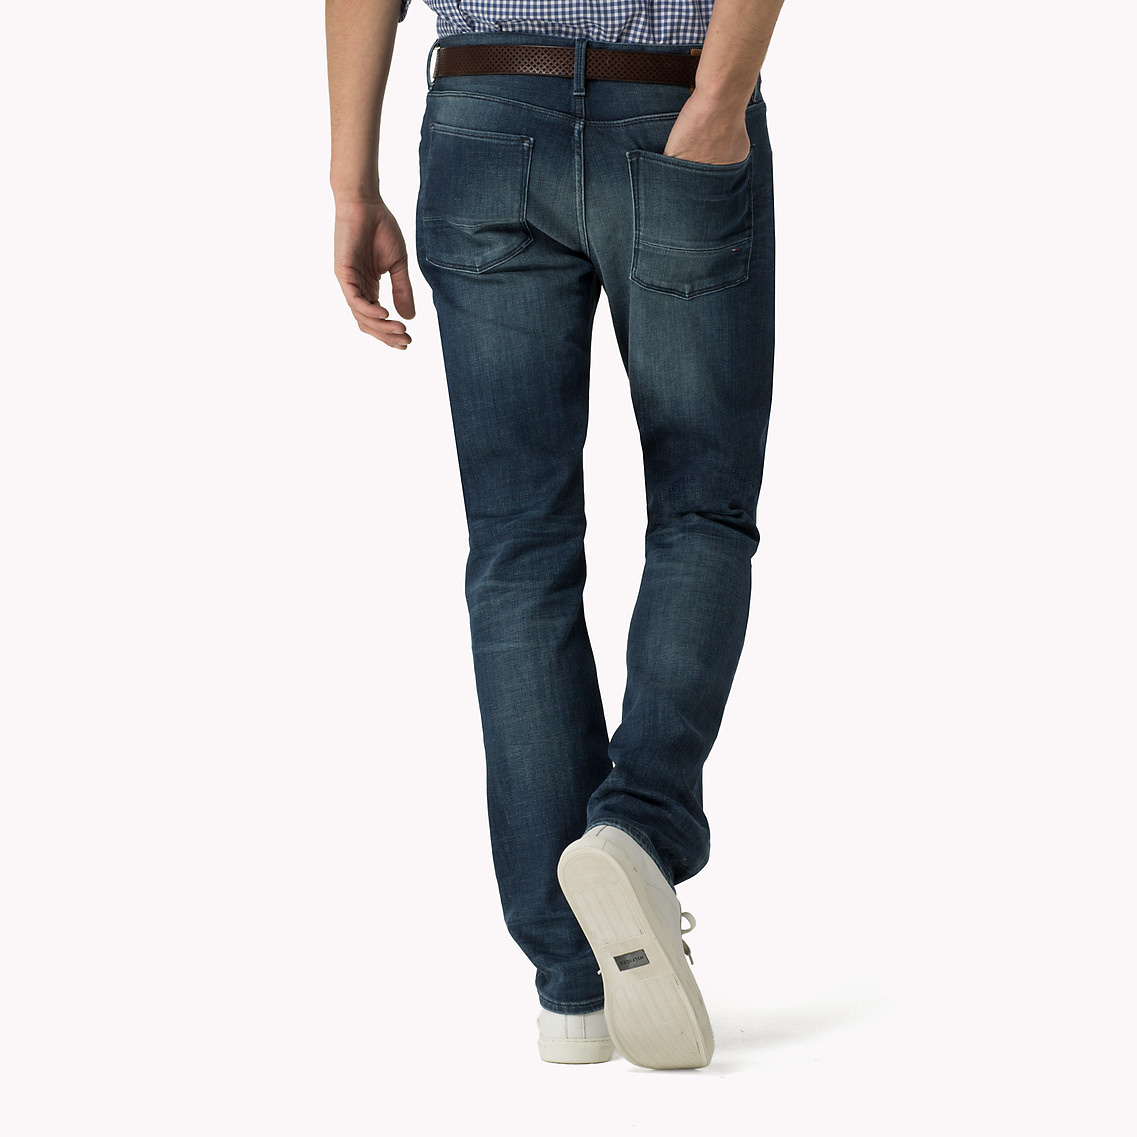 Tommy Hilfiger Jeans Bleecker Stretch Slim Fit Shop, 51% OFF |  www.slyderstavern.com